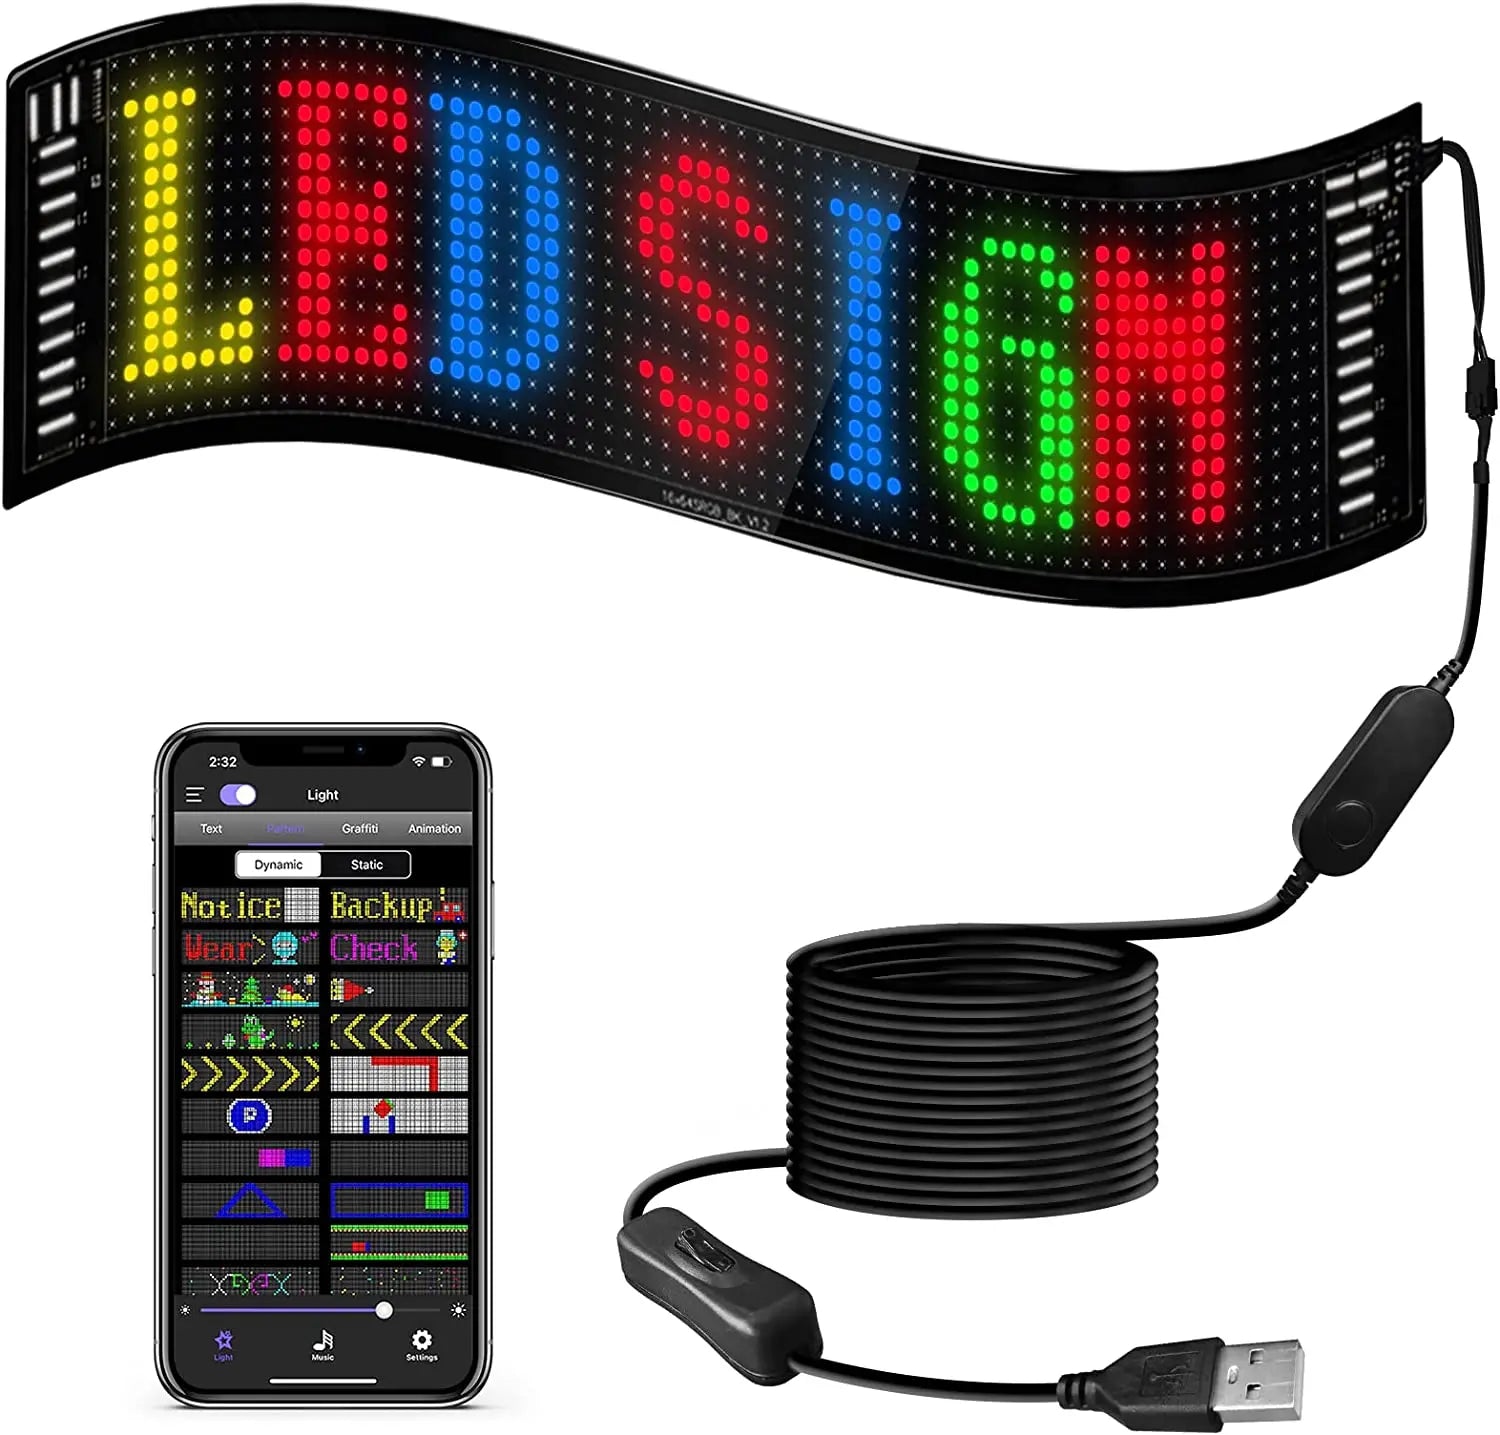 LED Matrix Pixel Panel ,USB 5V Flexible Addressable Text Animation Display